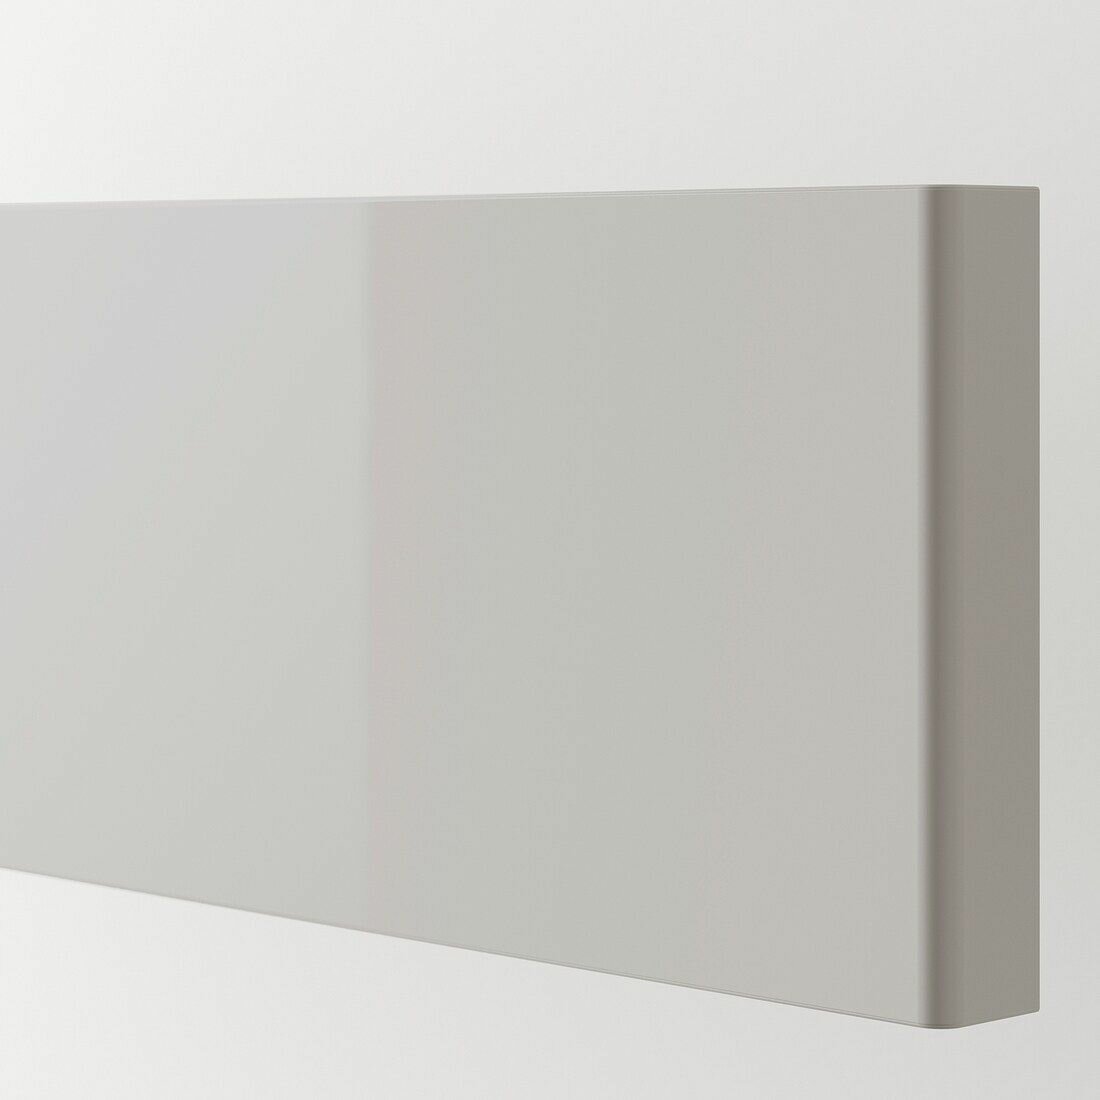 Фронтальная панель ящика IKEA RINGHULT рингульт, 80x10 см, 2 шт, глянцевая, светло-серый